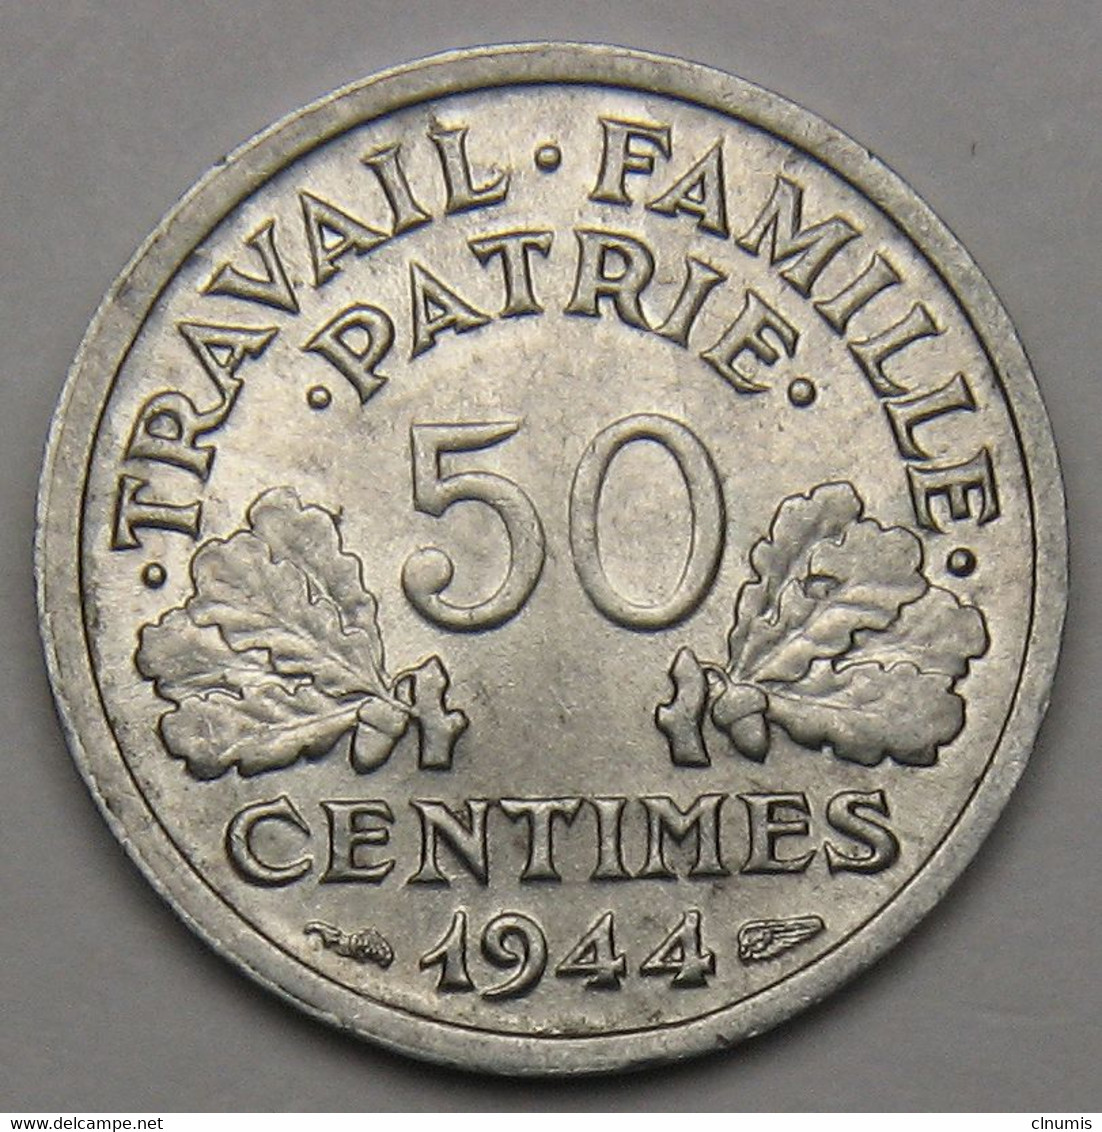 50 Centimes Francisque, Légère, 1944 B (Beaumont-le-Roger)  - Etat Français - 50 Centimes